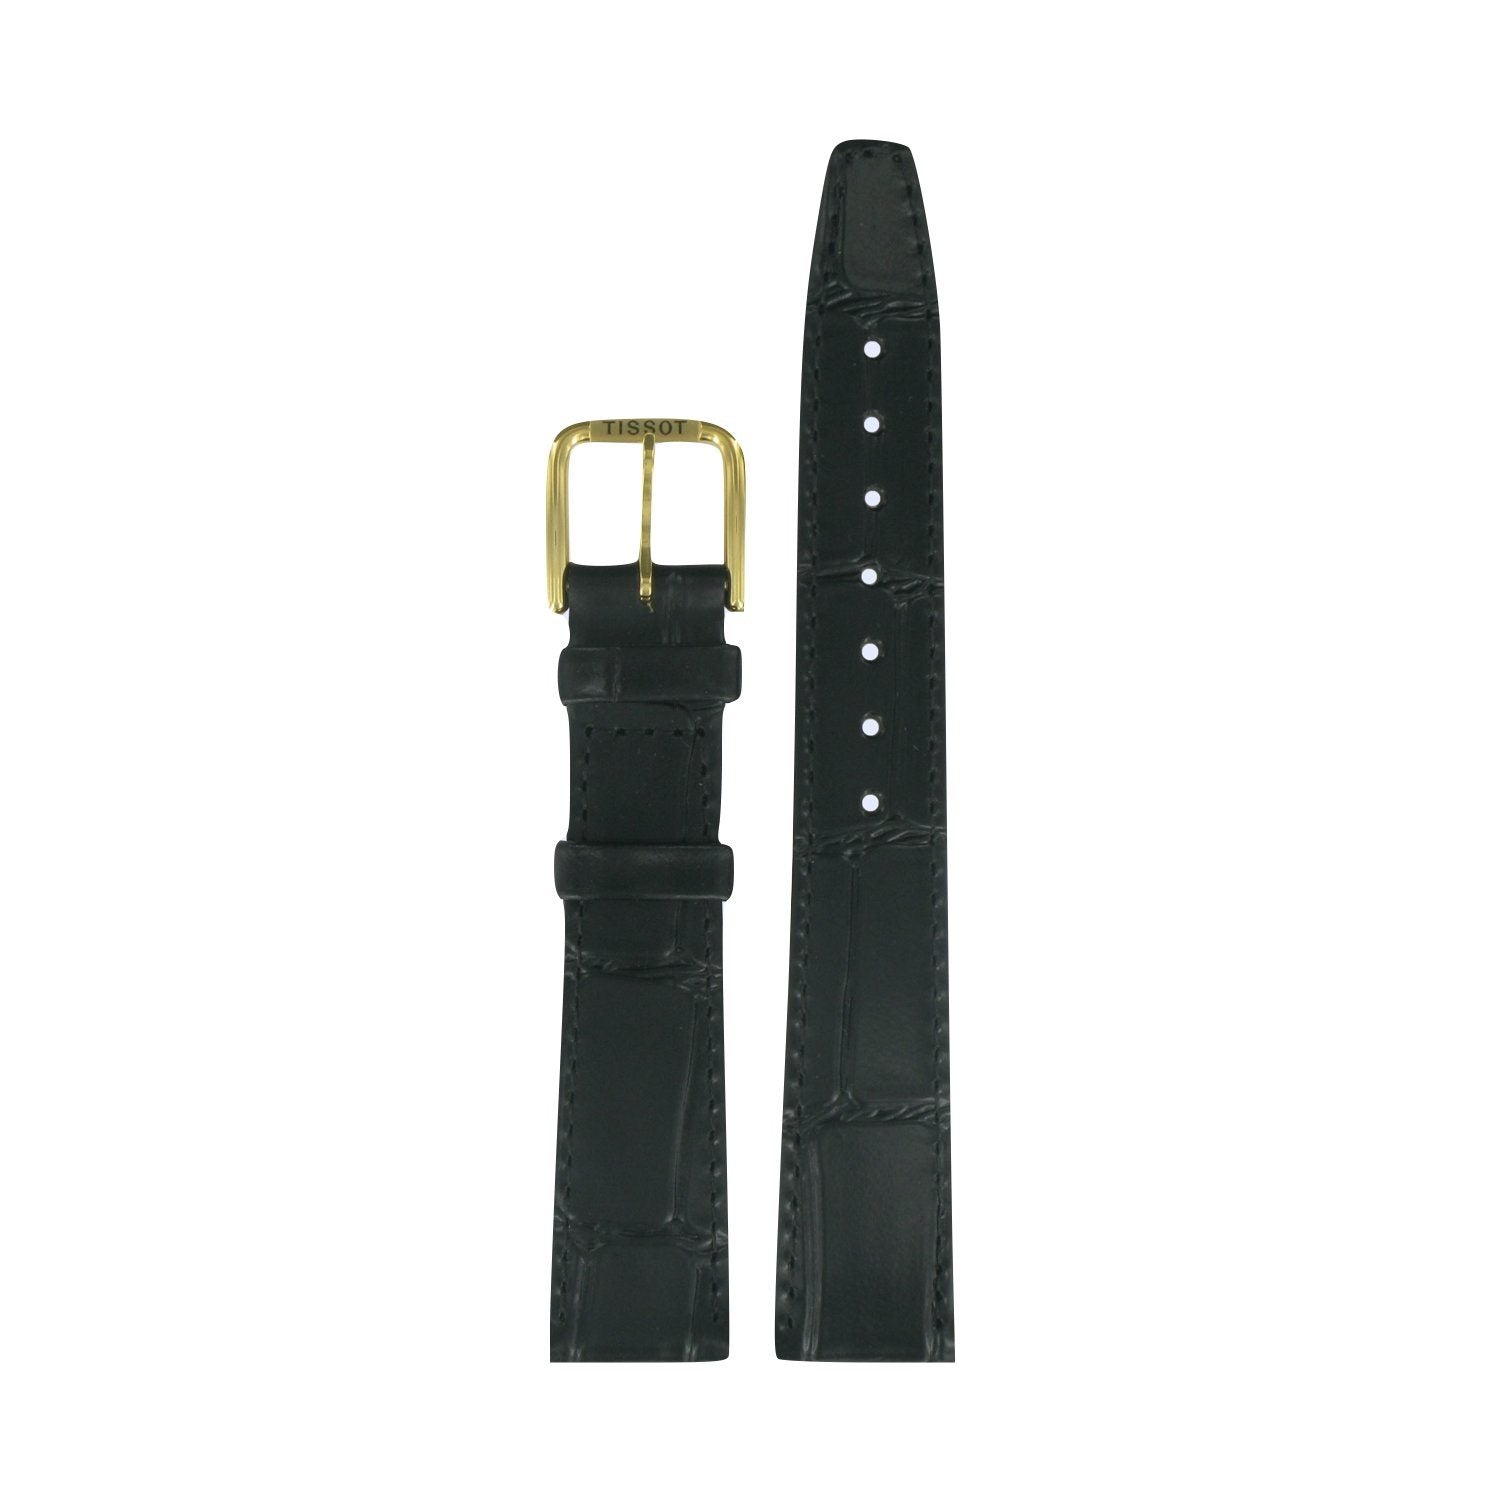 Genuine Tissot 17mm Reader's Digest Black Leather Strap by Tissot